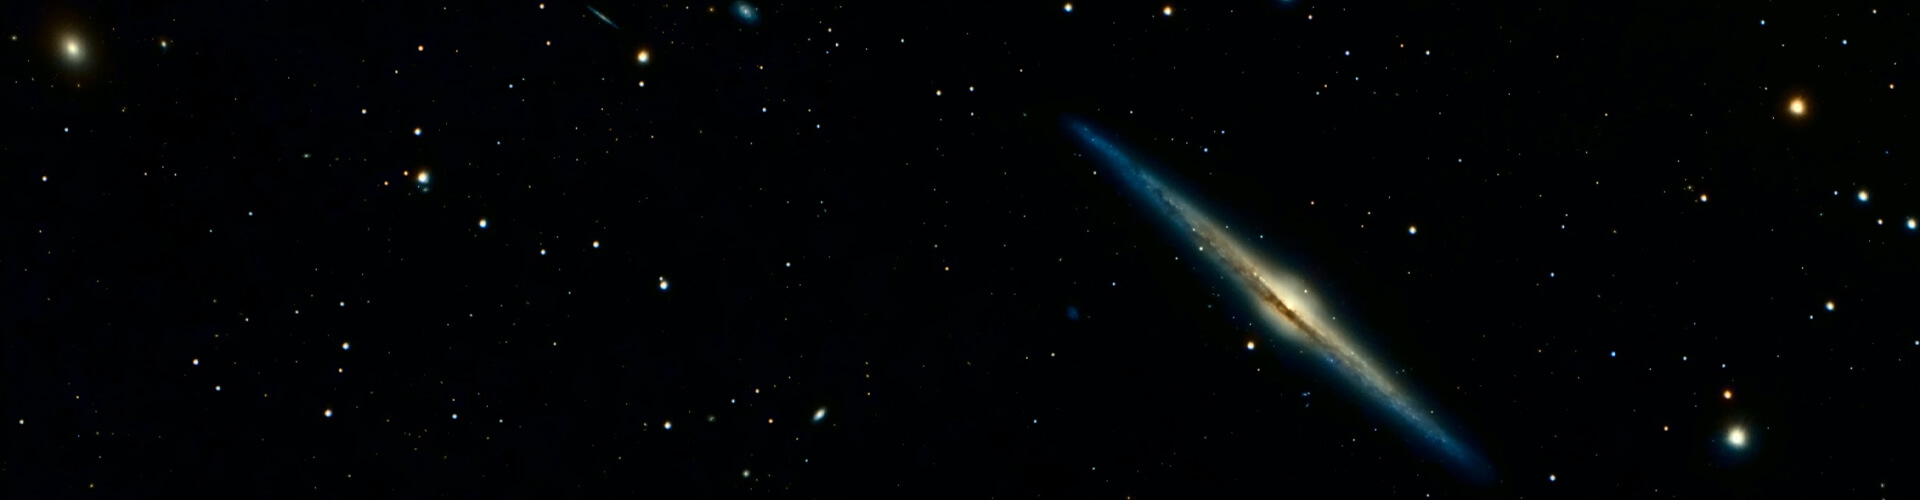 Comet in sky.